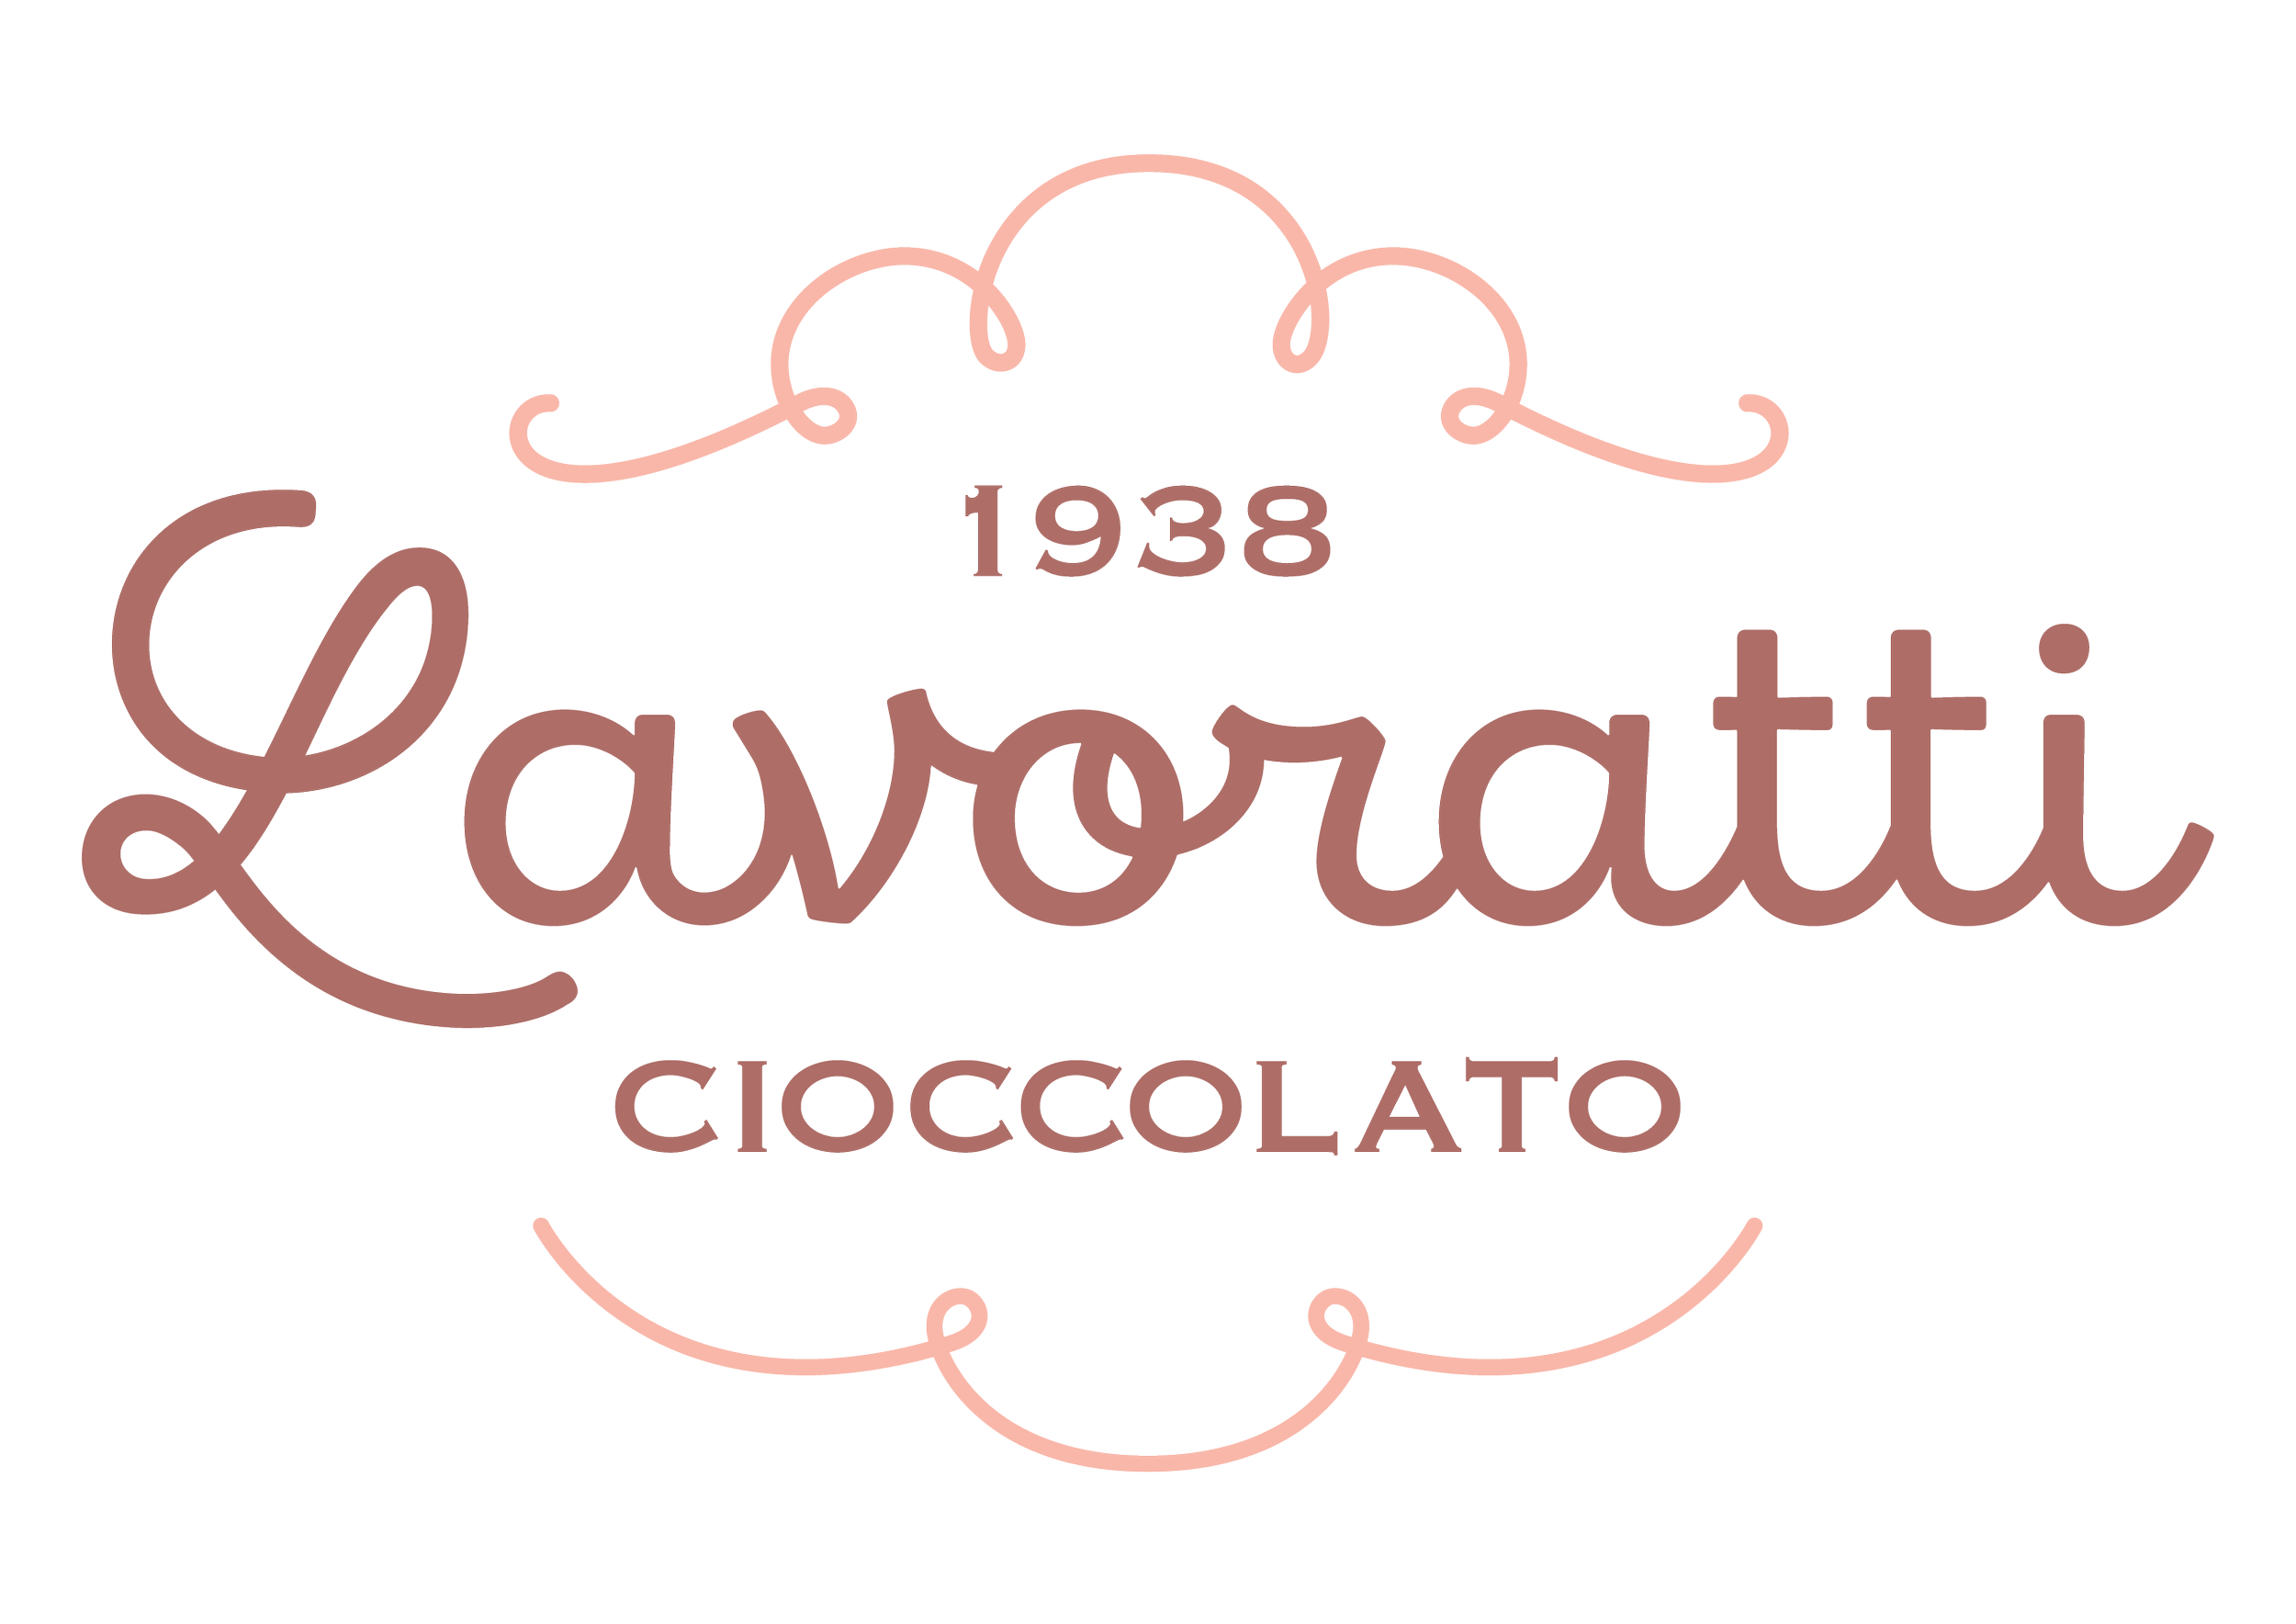 Logo-Lavoratti-Cioccolato-RGB - Copia.png